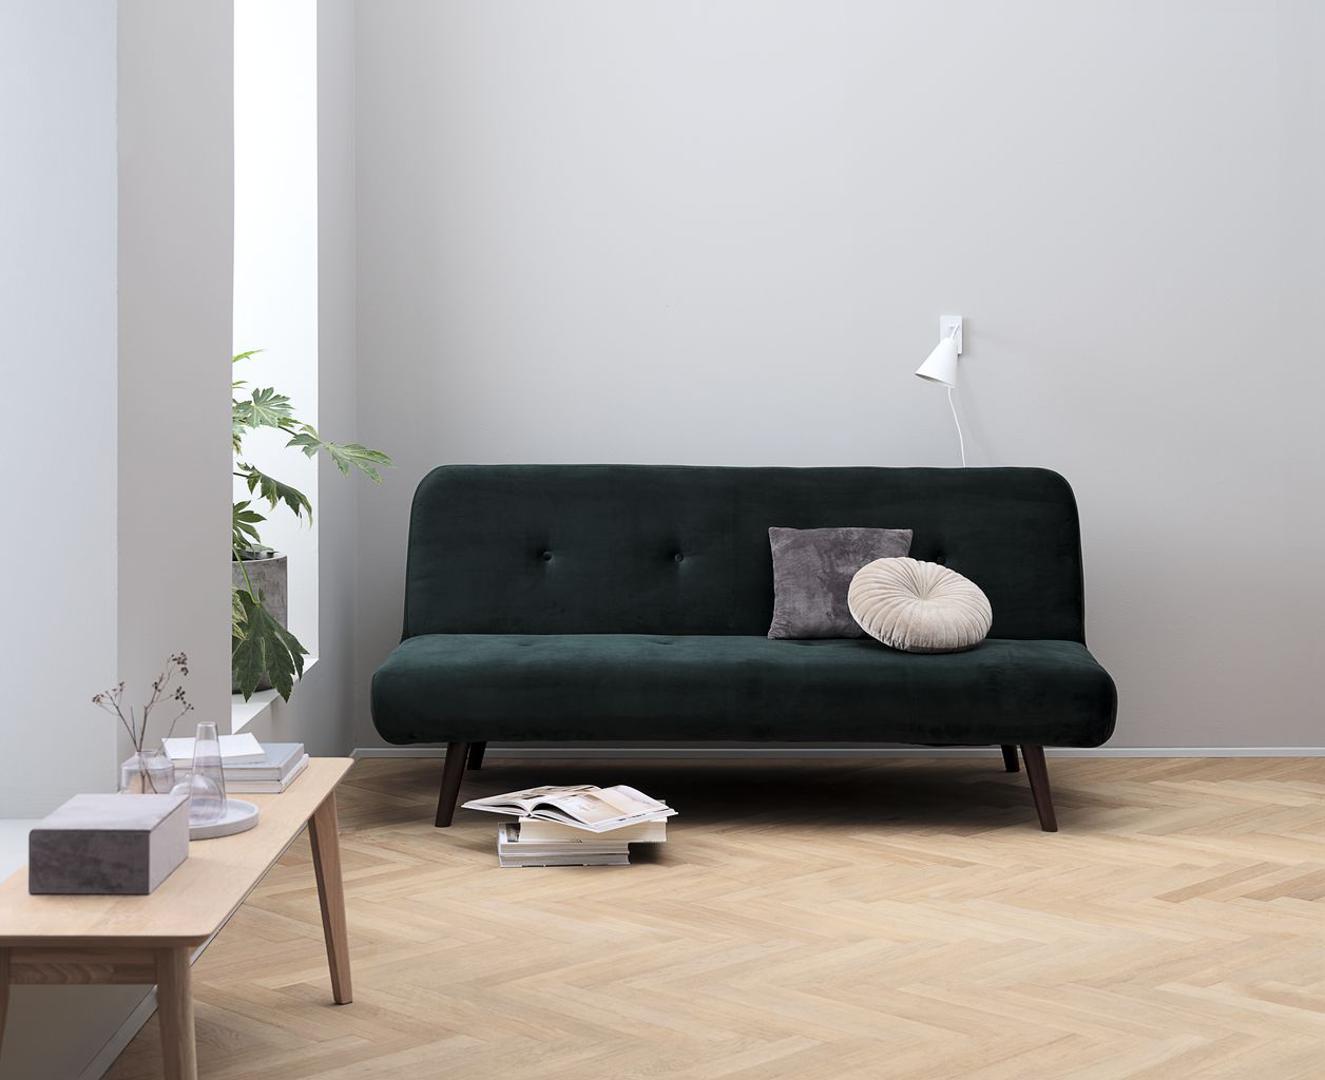 Iako pliš ne treba dodatno naglašavati, sofa u smaragdno zelenoj boji to će svakako učiniti i samu sofu učiniti it komadom vašeg dnevnog boravka. IKEA, 1600 kn